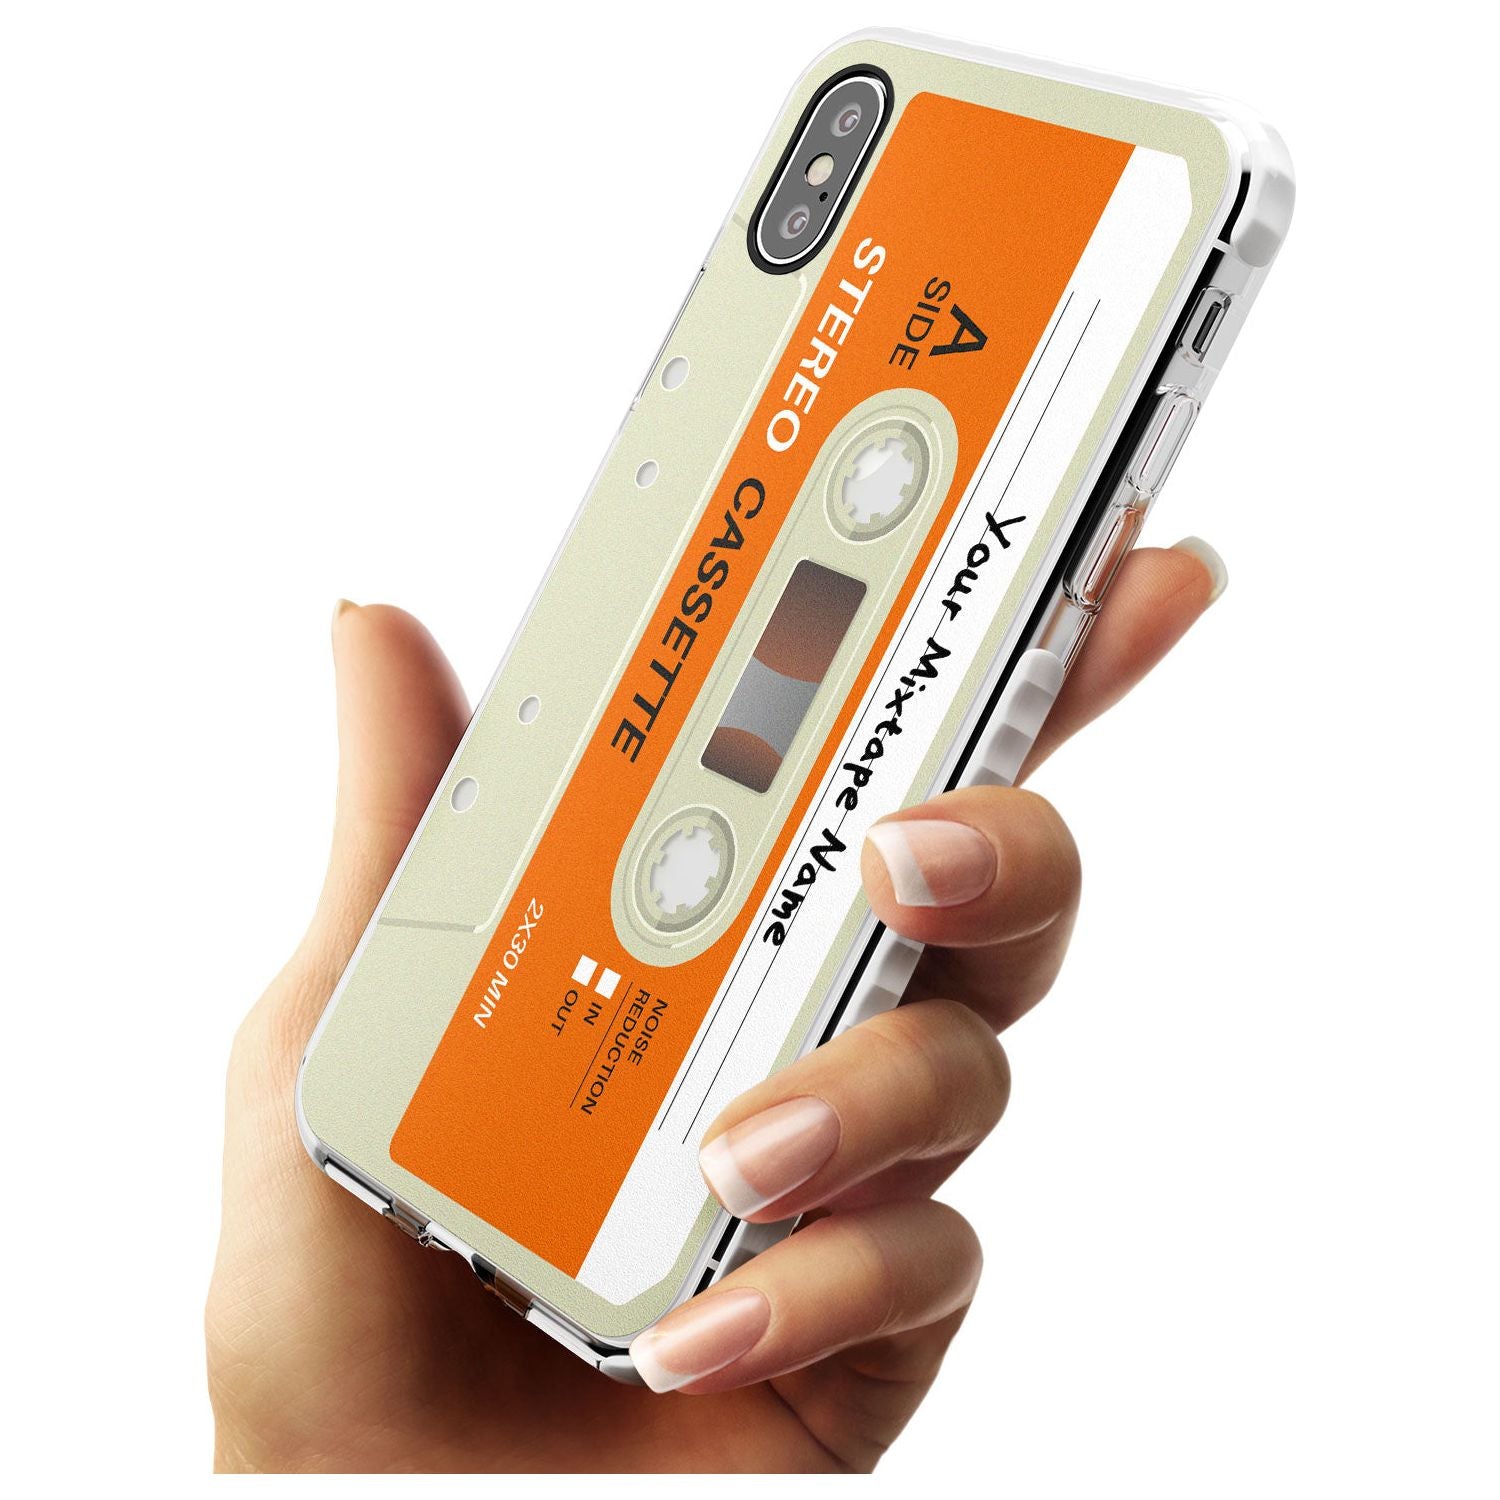 Classic Cassette Slim TPU Phone Case Warehouse X XS Max XR